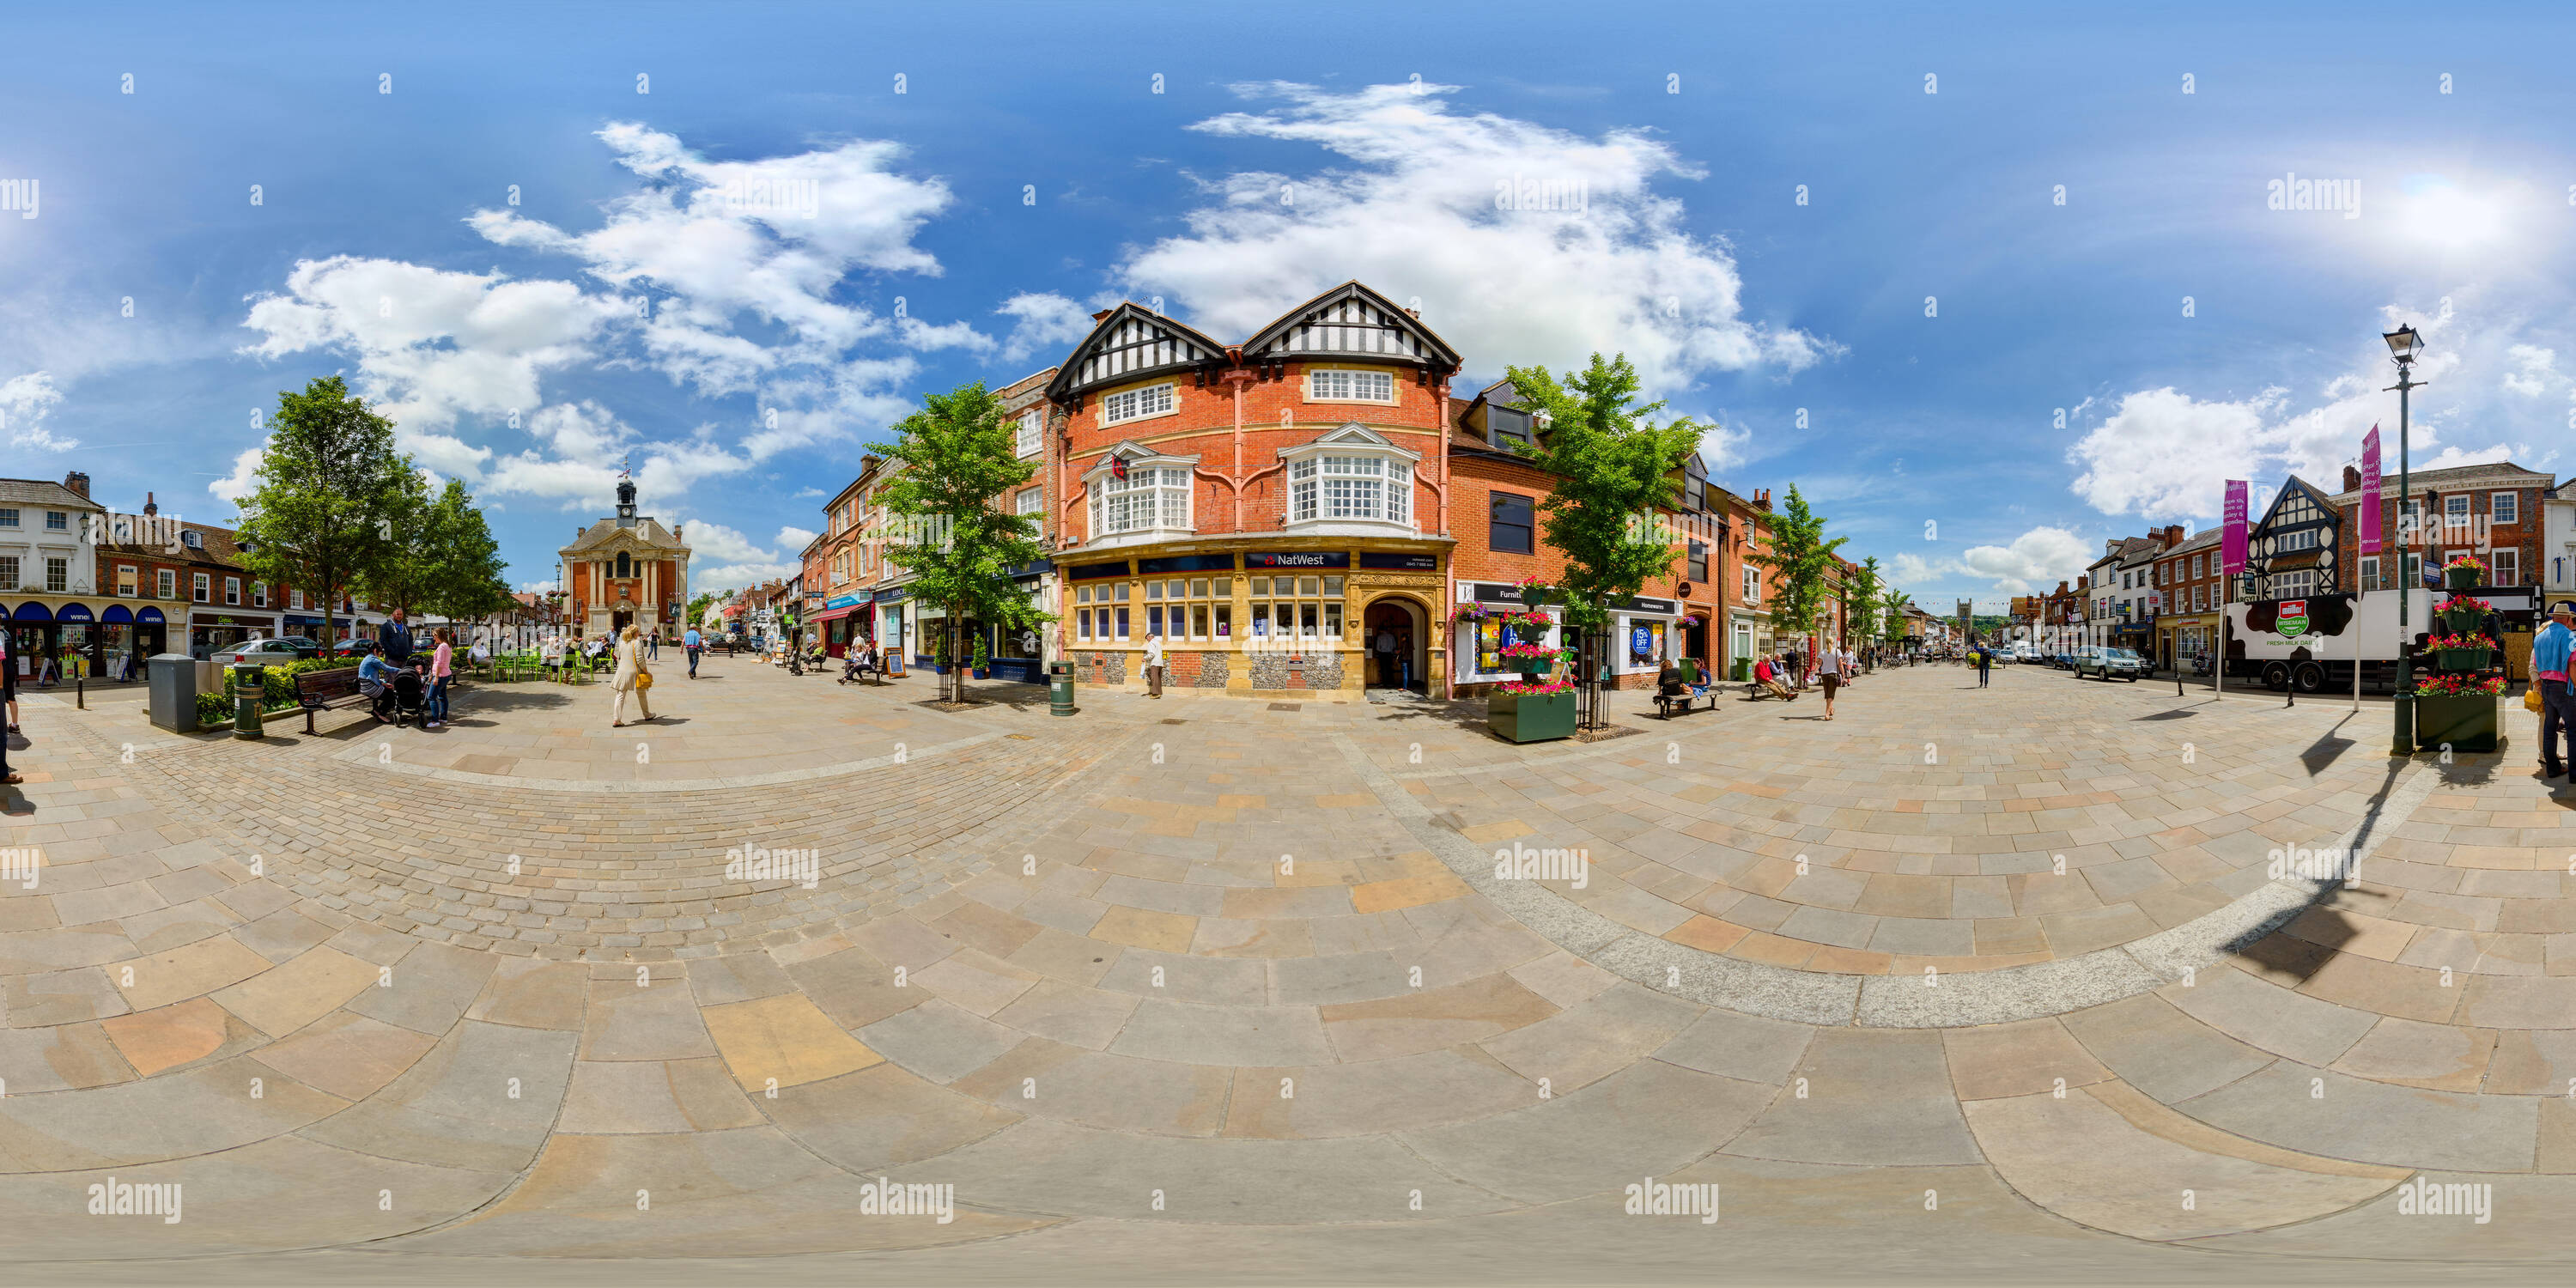 Vista panorámica en 360 grados de Henley on Thames Market Town, Oxfordshire, REINO UNIDO